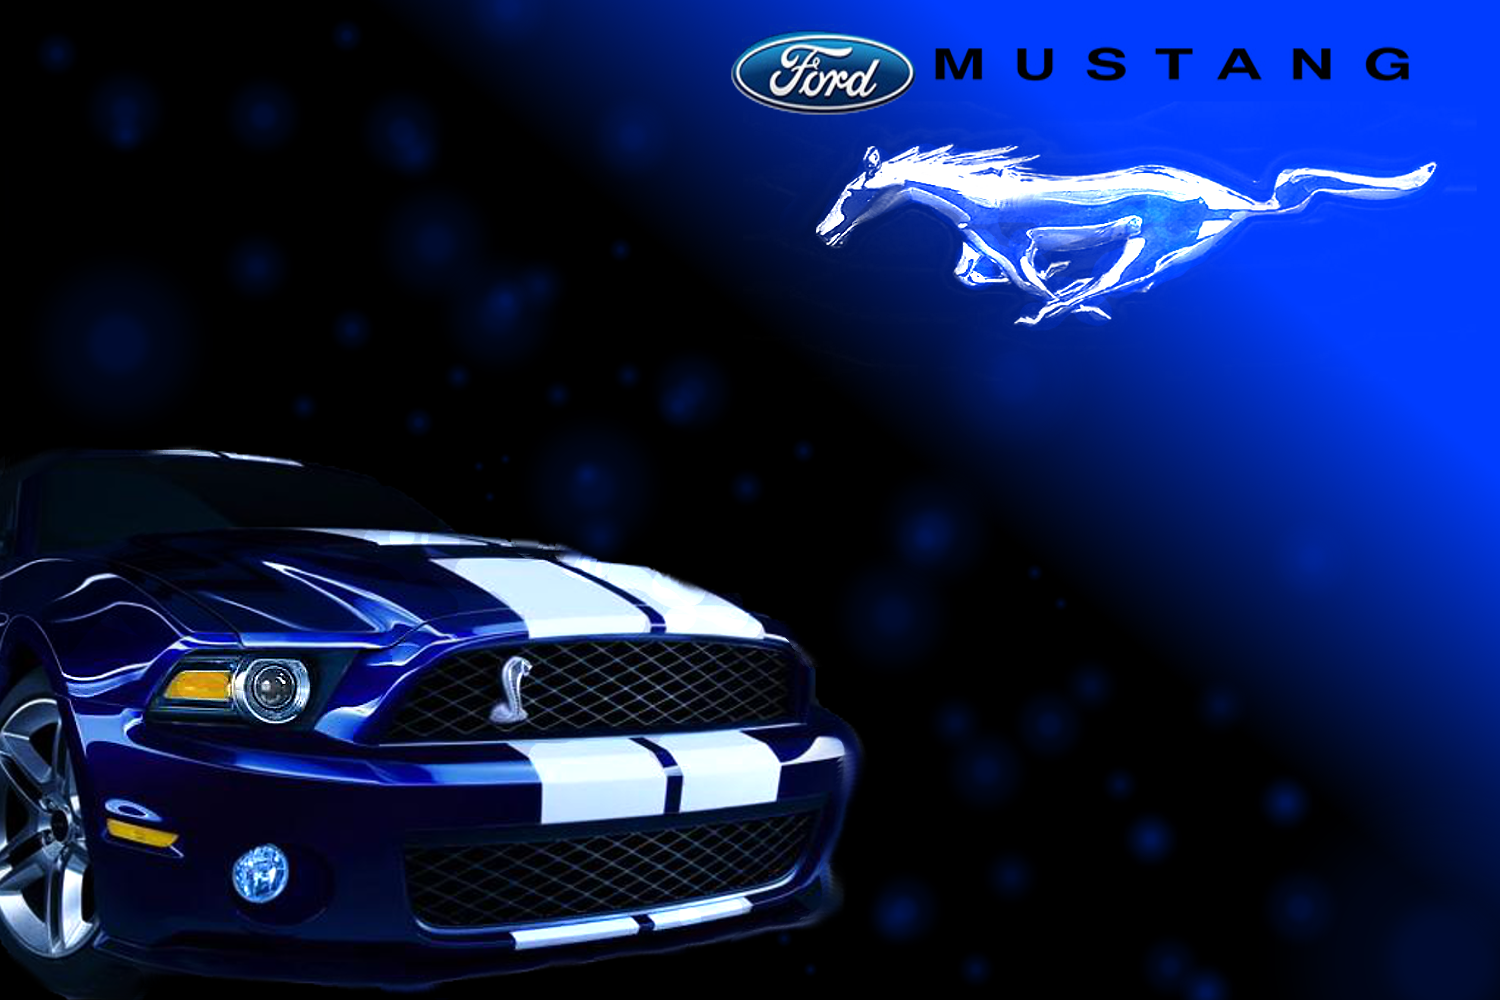 Ford Mustang Cobra Logo Wallpaper Shelby cobra gt500 wallpaper 1500x1000